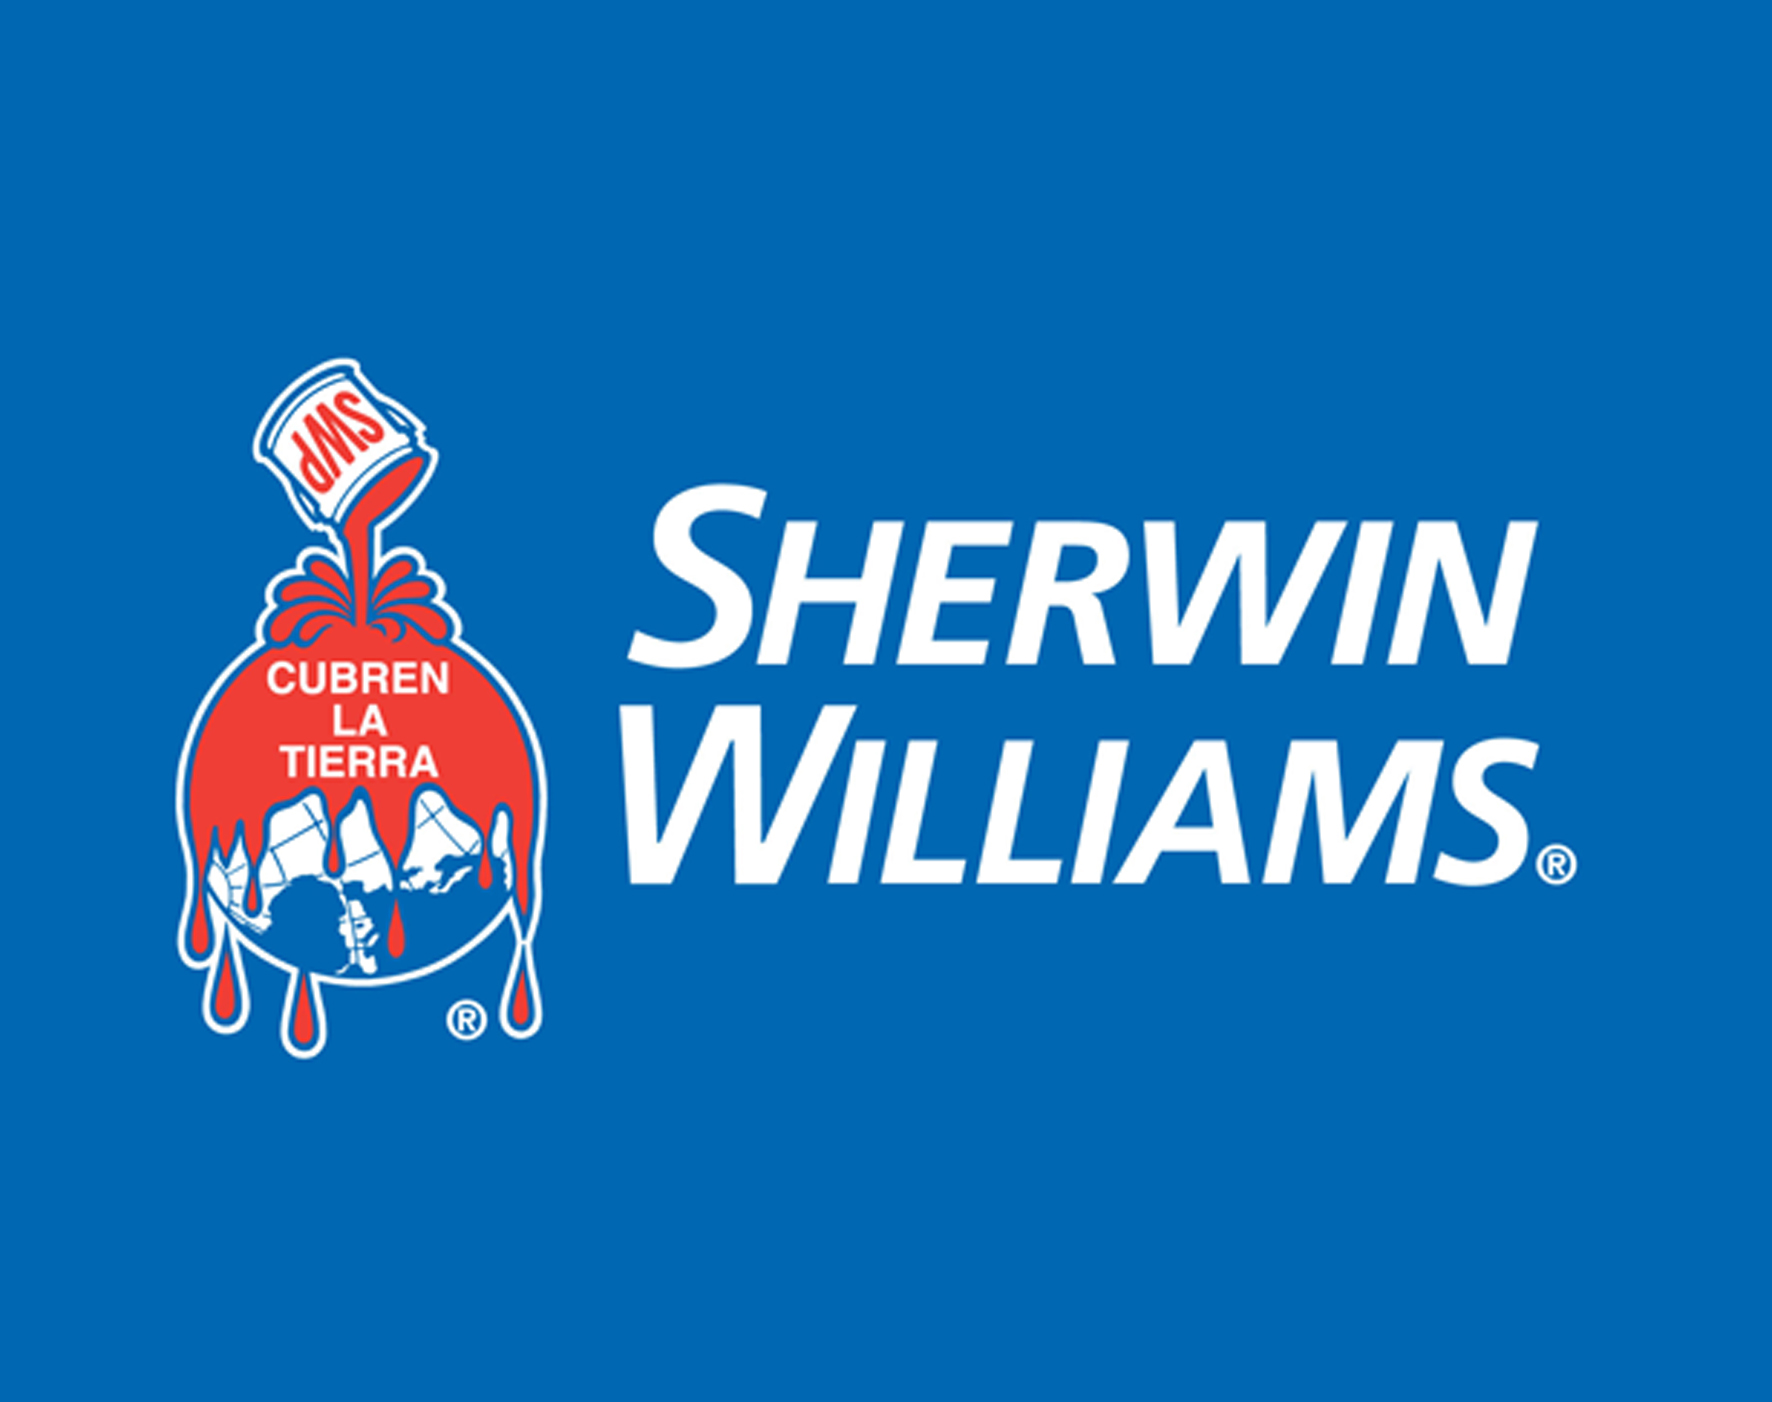 Cliente Sherwin Williams